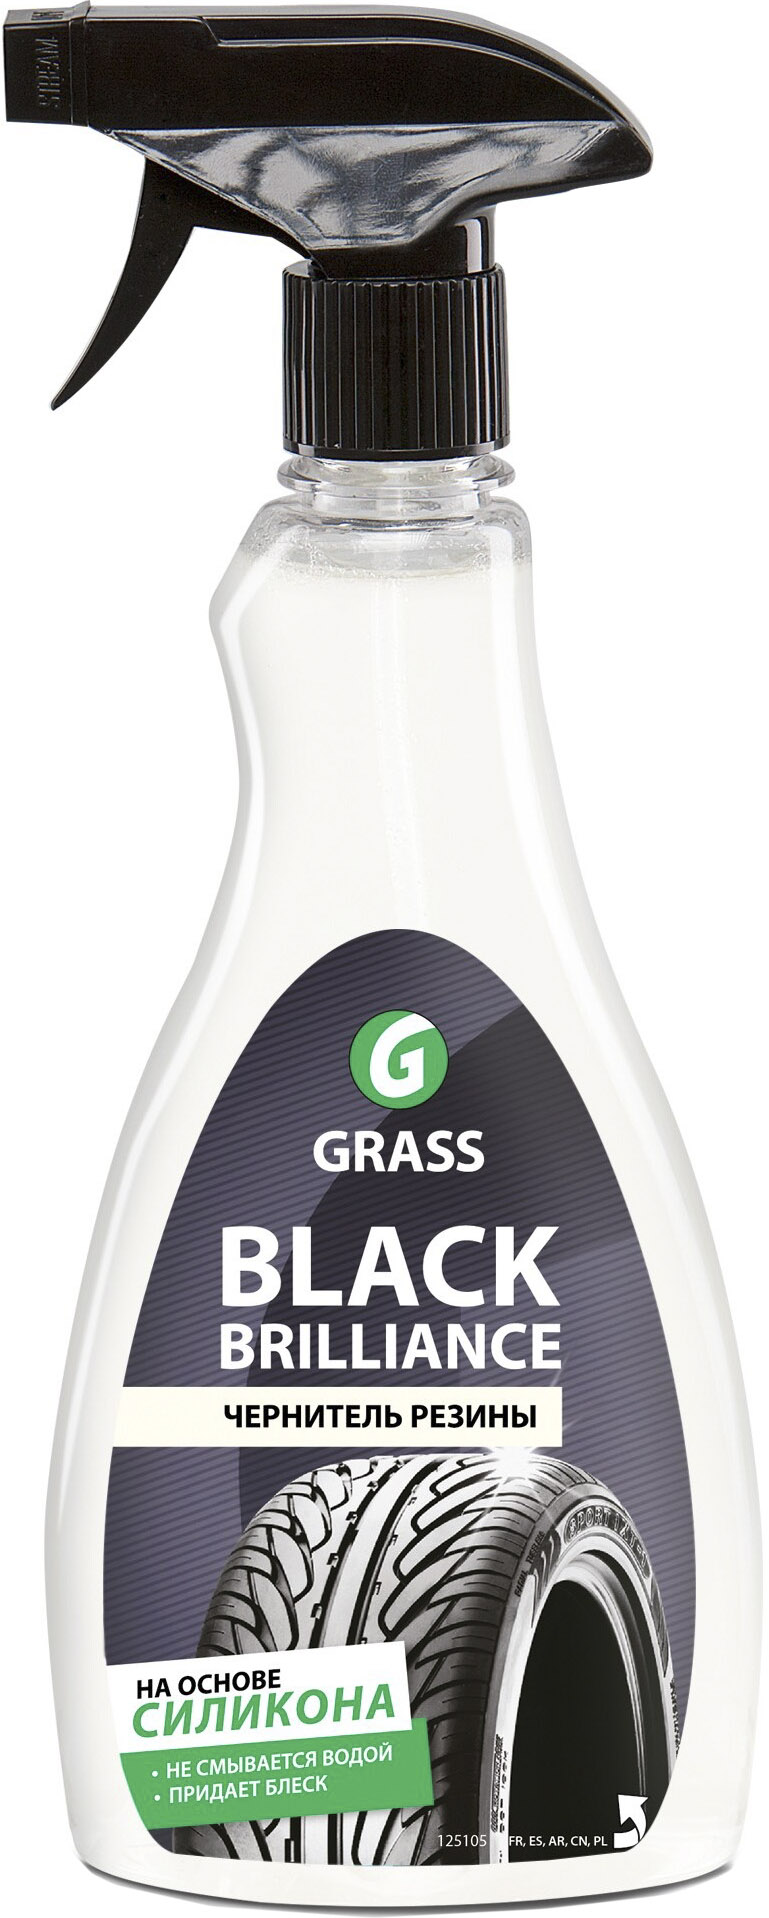 

Полироль для шин Grass Black brilliance 125105g